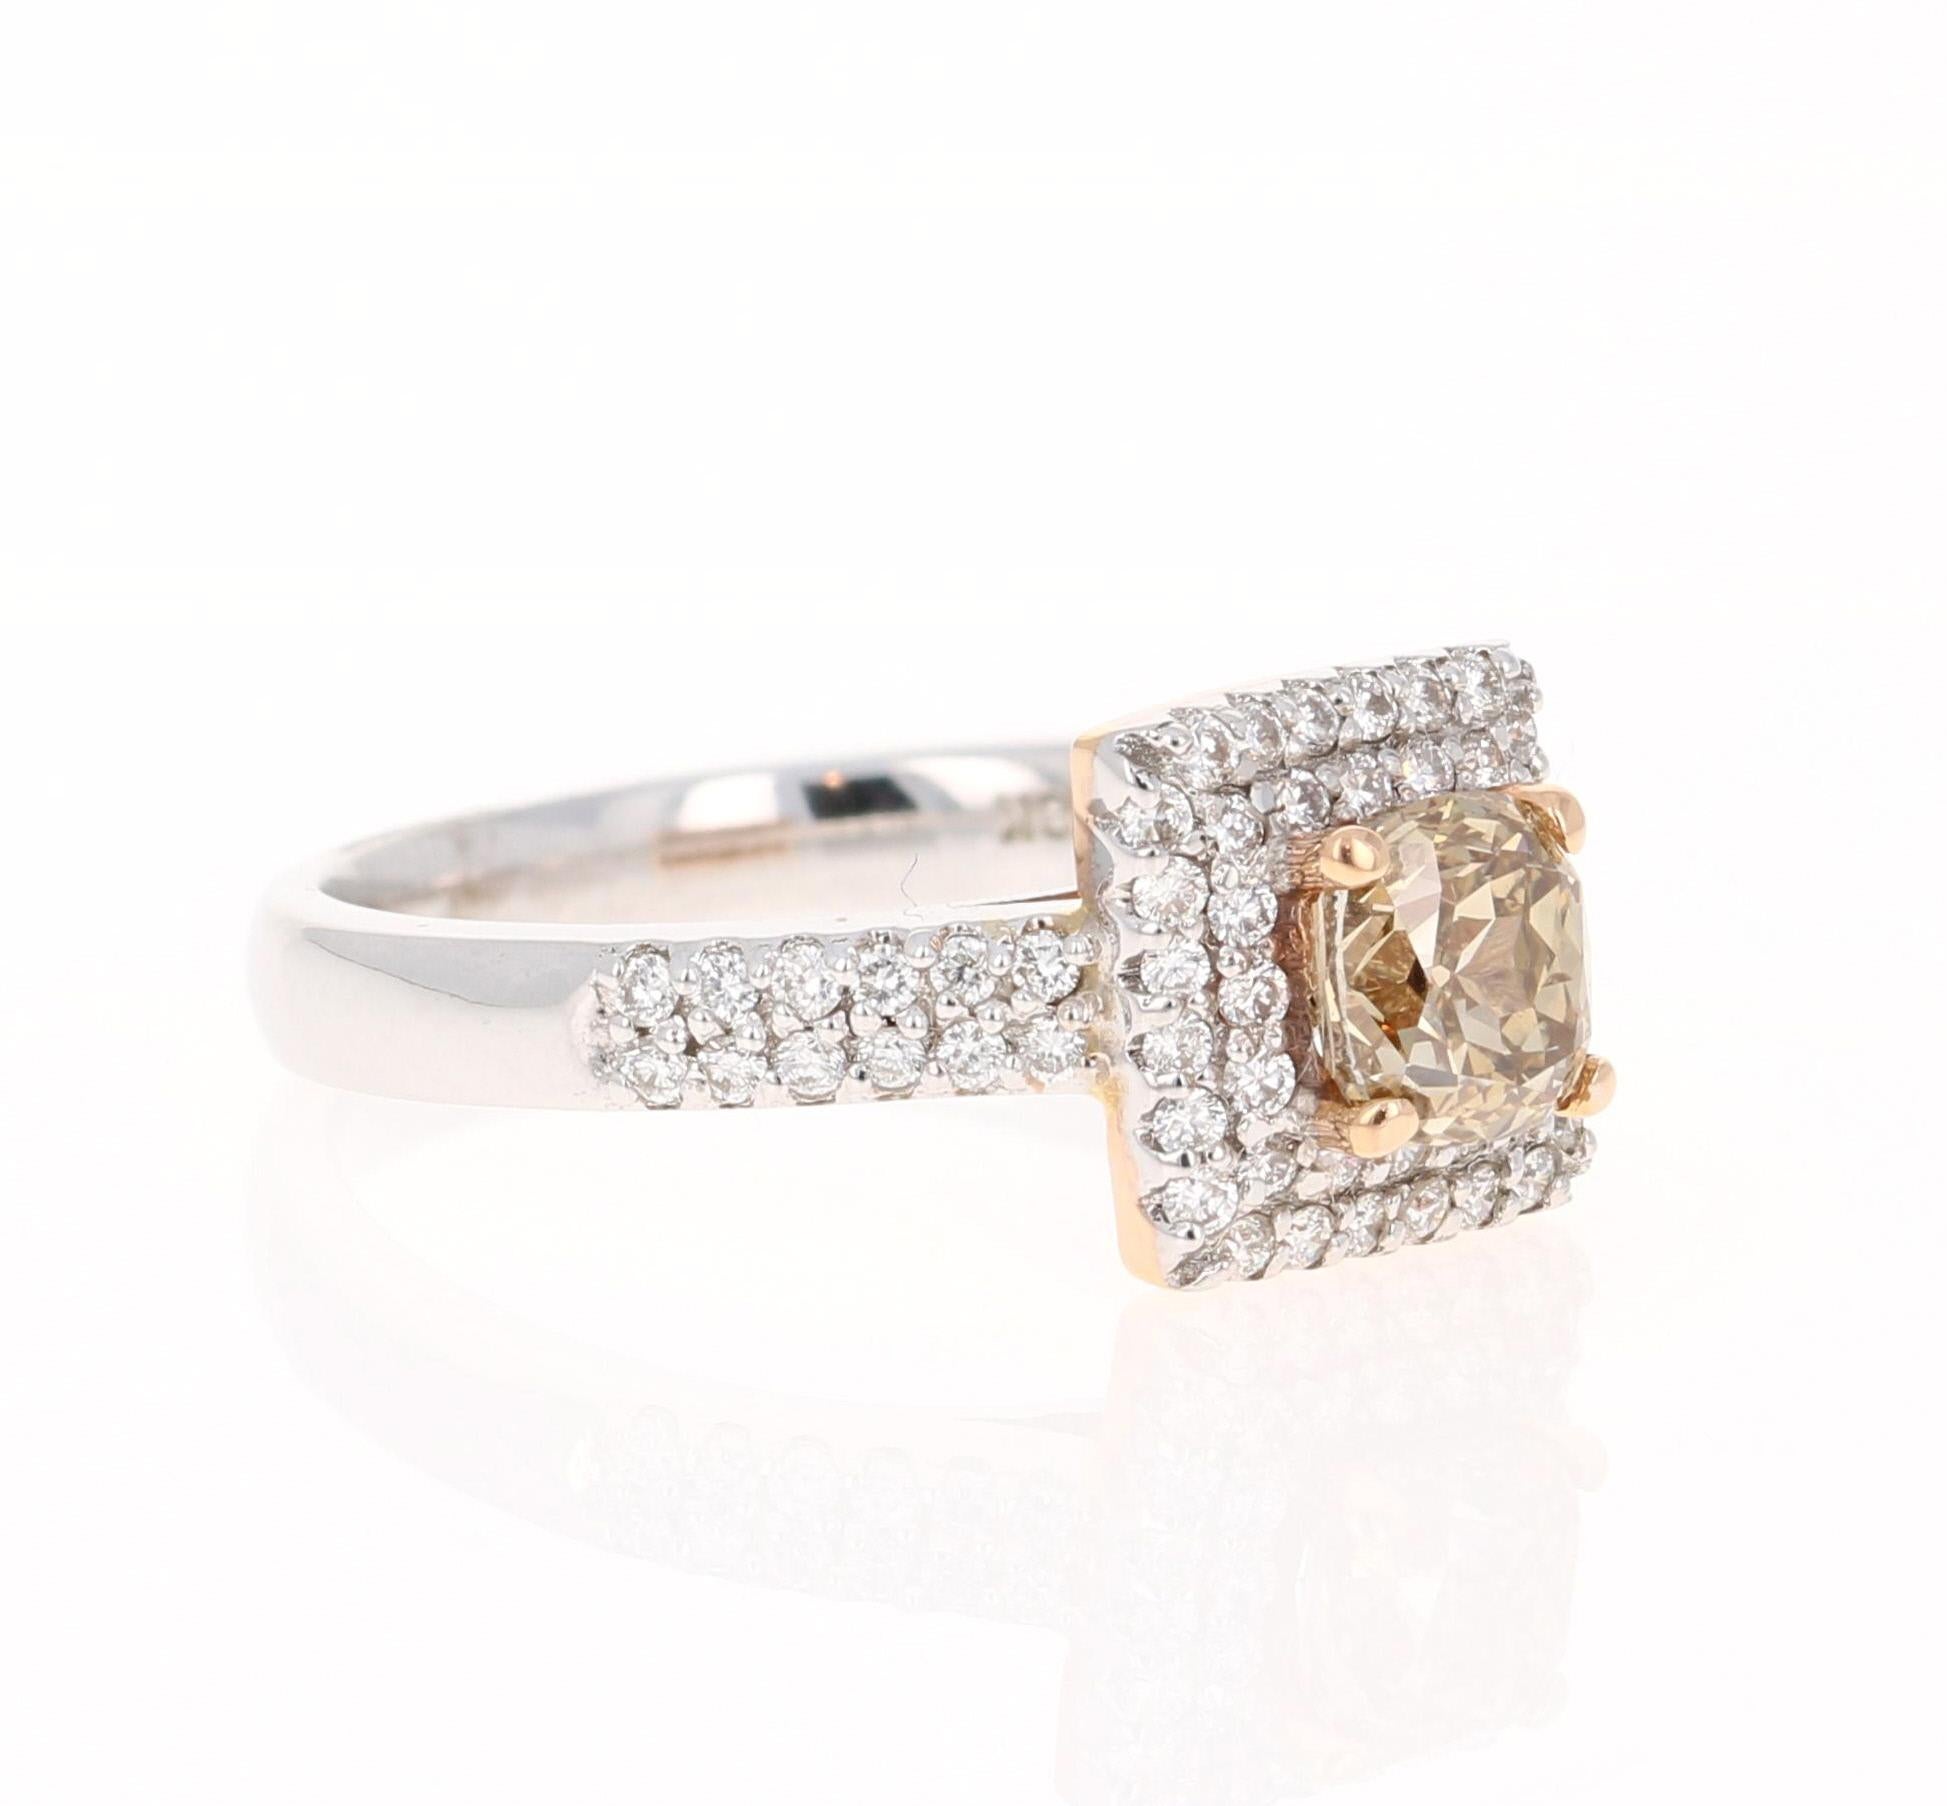 1,46 Karat Champagner-Diamant-Verlobungsring aus 18 Karat Weißgold

Eine tolle Alternative zu einem typischen Diamant-Verlobungsring!

Dieser Ring hat einen 1,04 Karat schweren natürlichen Champagner-Diamanten (Reinheit SI1), der von 64 Diamanten im